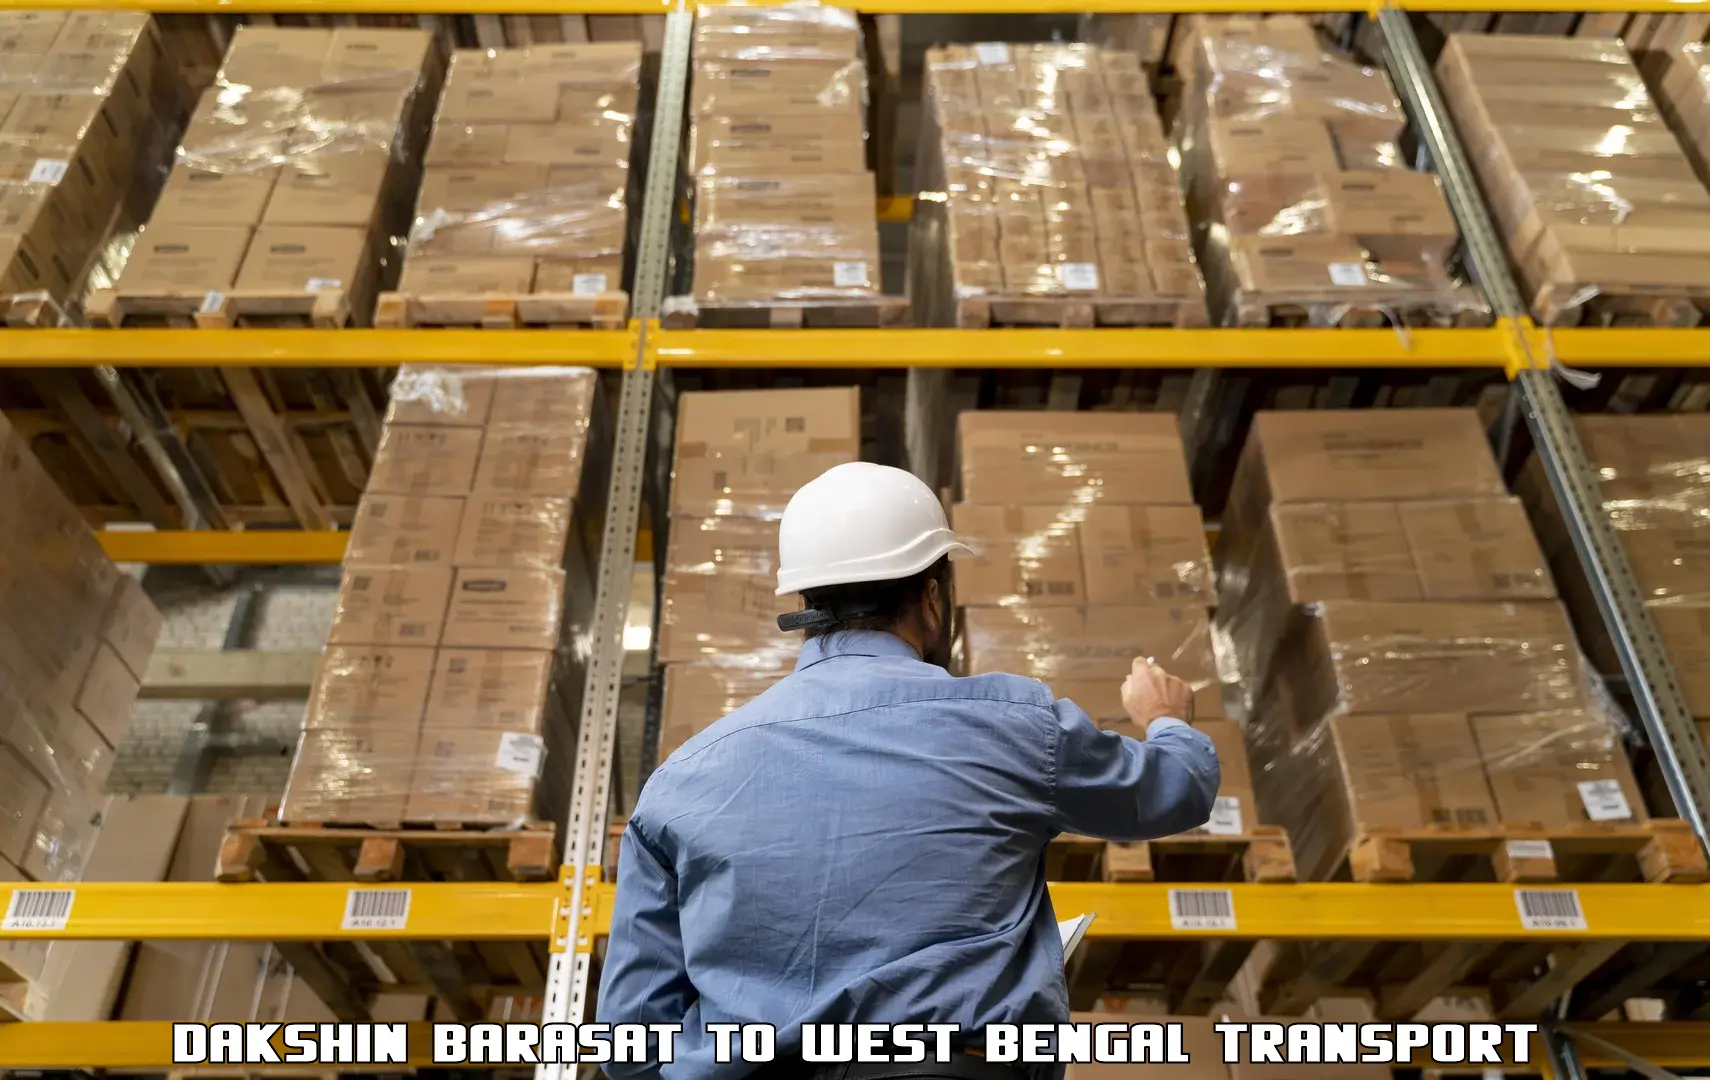 International cargo transportation services Dakshin Barasat to Mohammad Bazar